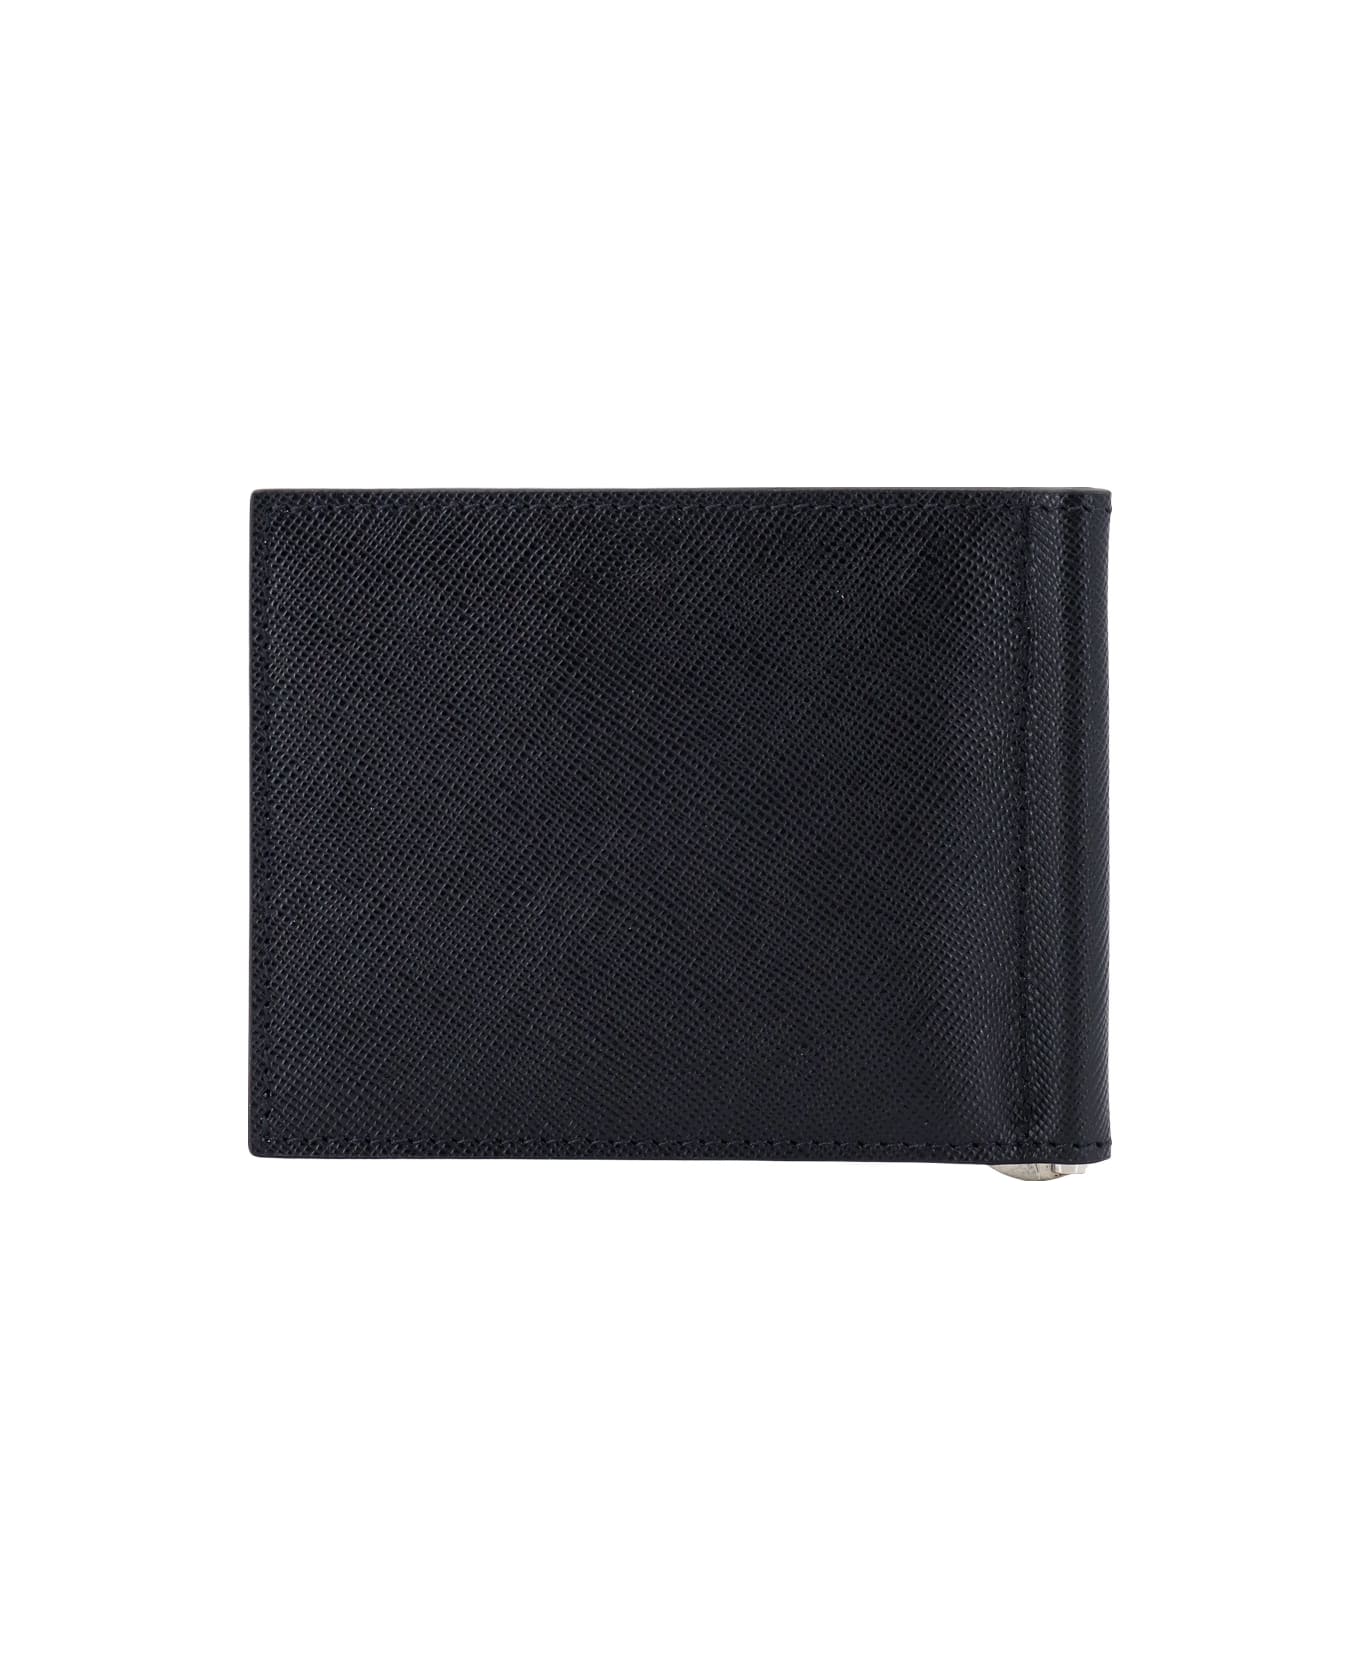 Kiton Card Holder - Black